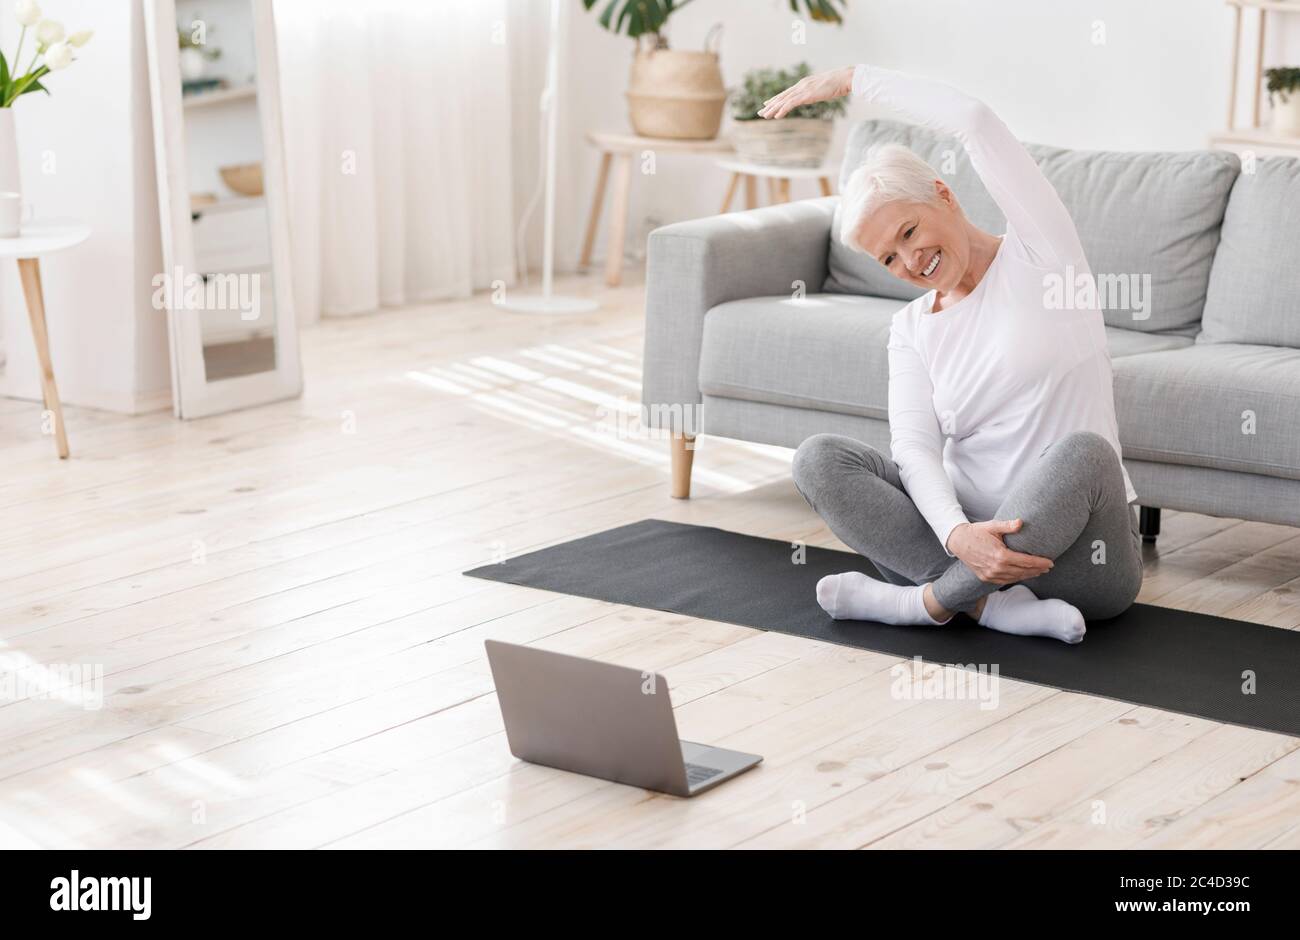 Training Im Inland. Glückliche ältere Frau beim Fitnesstraining vor dem Laptop Stockfoto